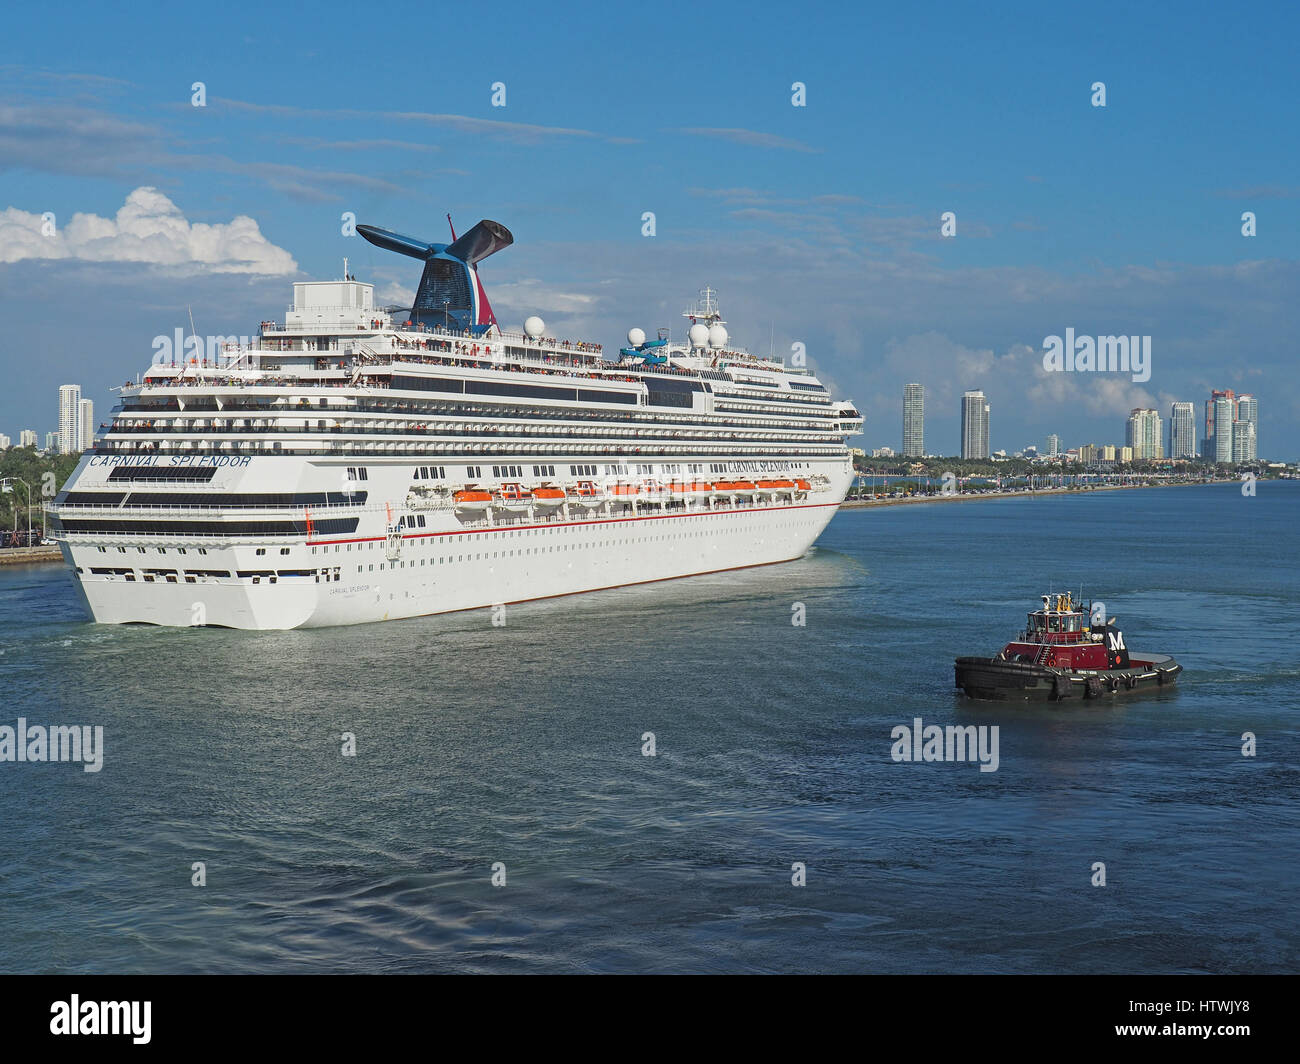 Crucero Carnival Splendor asistido por remolcadores de abandonar el puerto de Miami. Foto de stock